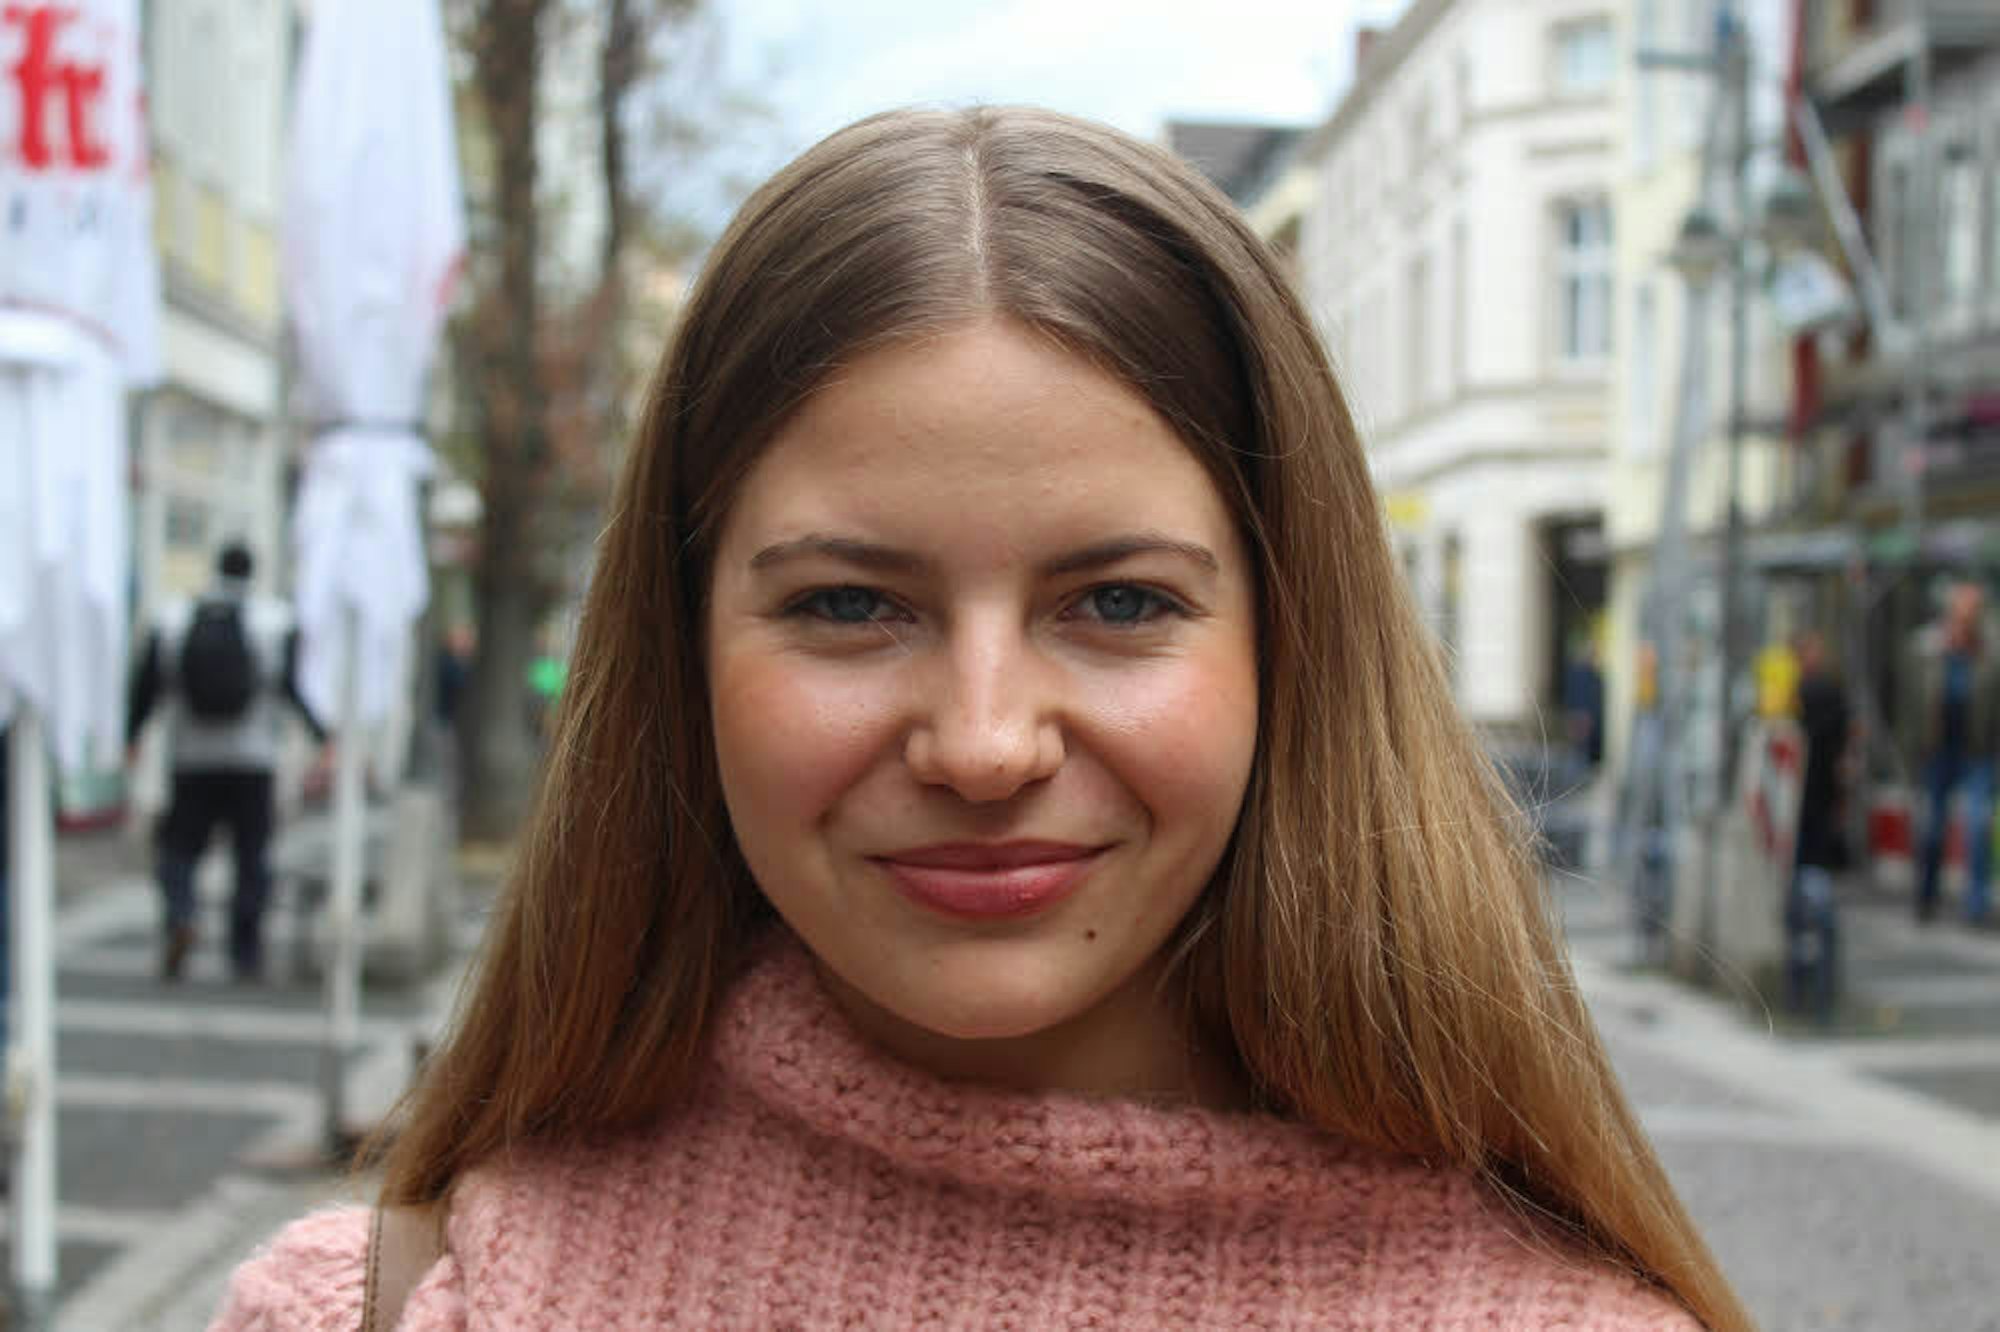 Lea Pelzer, 21, Frechen